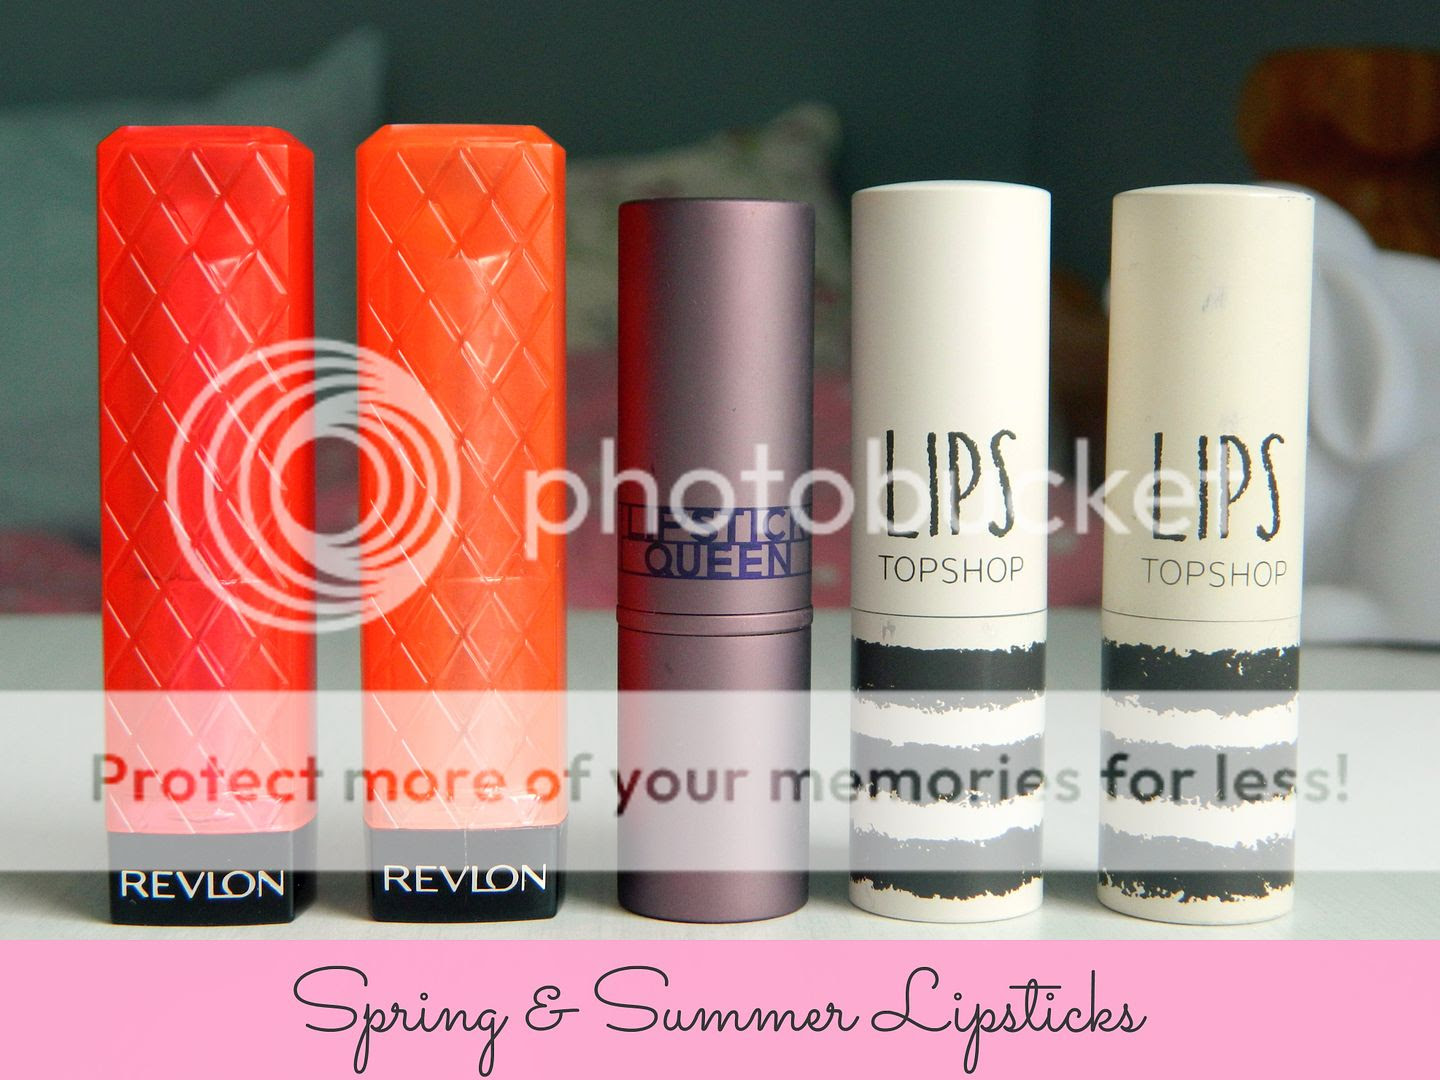 Spring and Summer 2013 Lipsticks Revlon Lip Butter Lipstick Queen Topshop